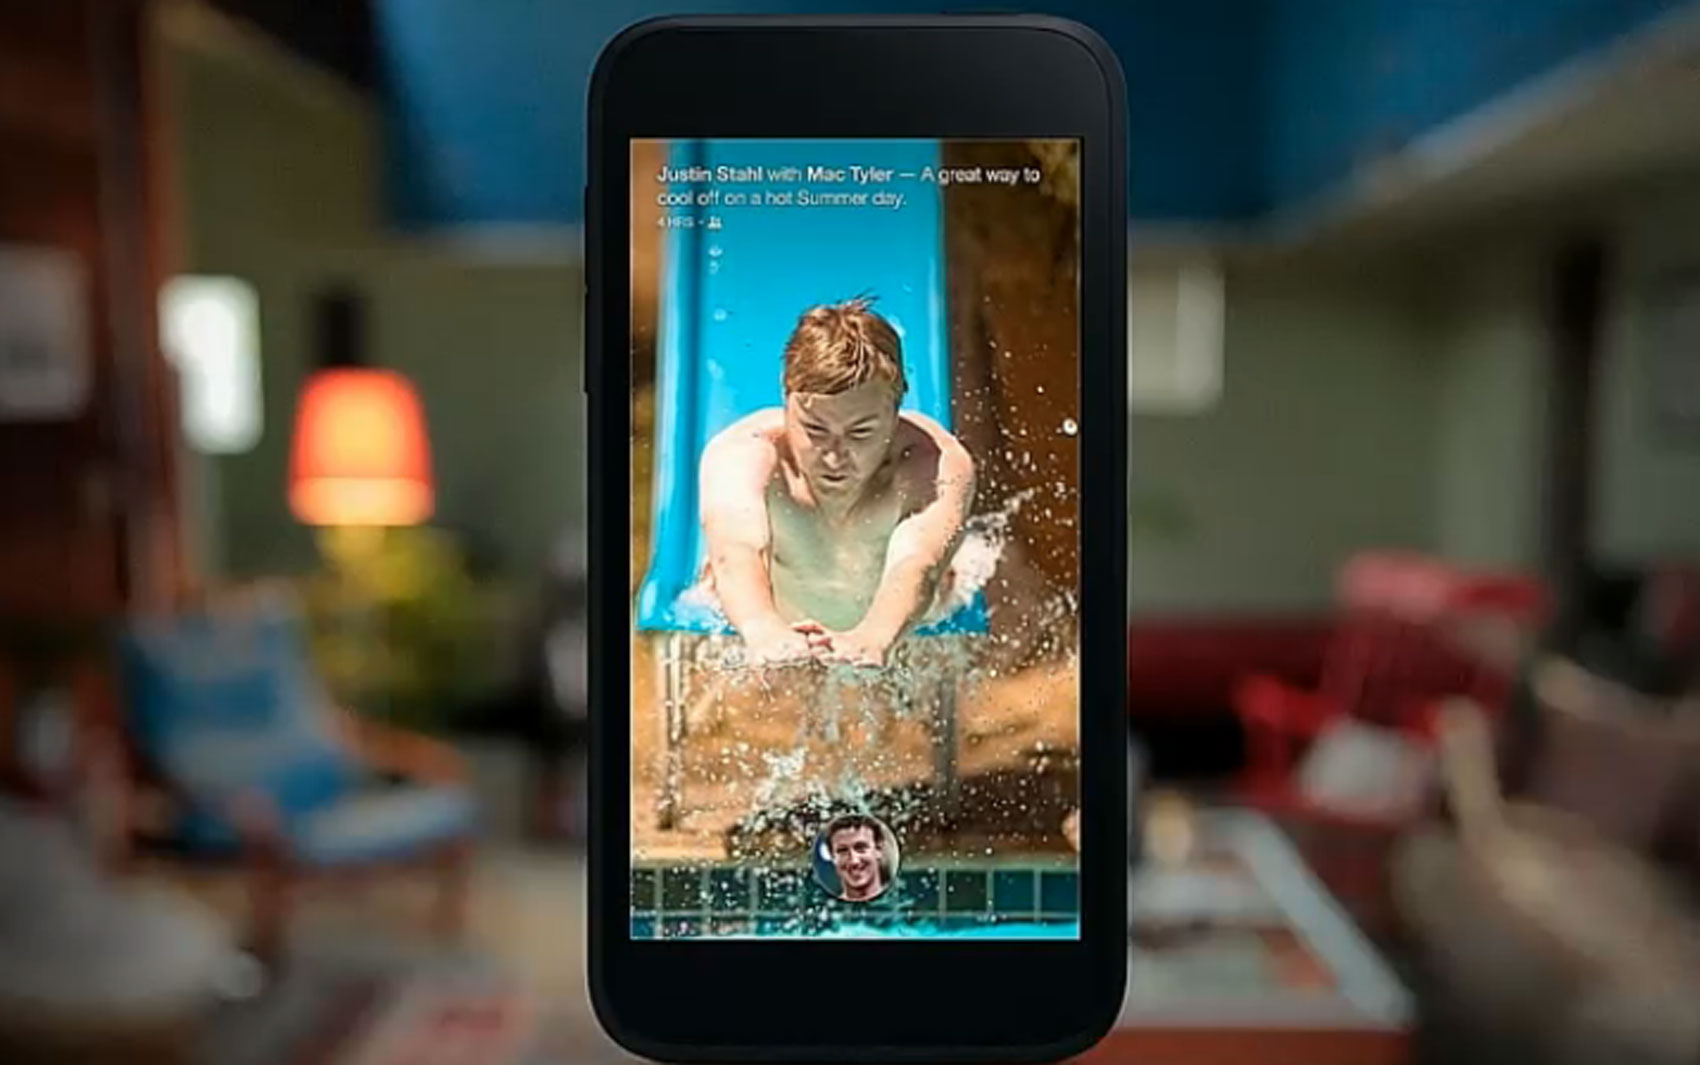 Facebook anuncia nova interface 'Home' para celulares Android que mostra 'news feed' na tela inicial.